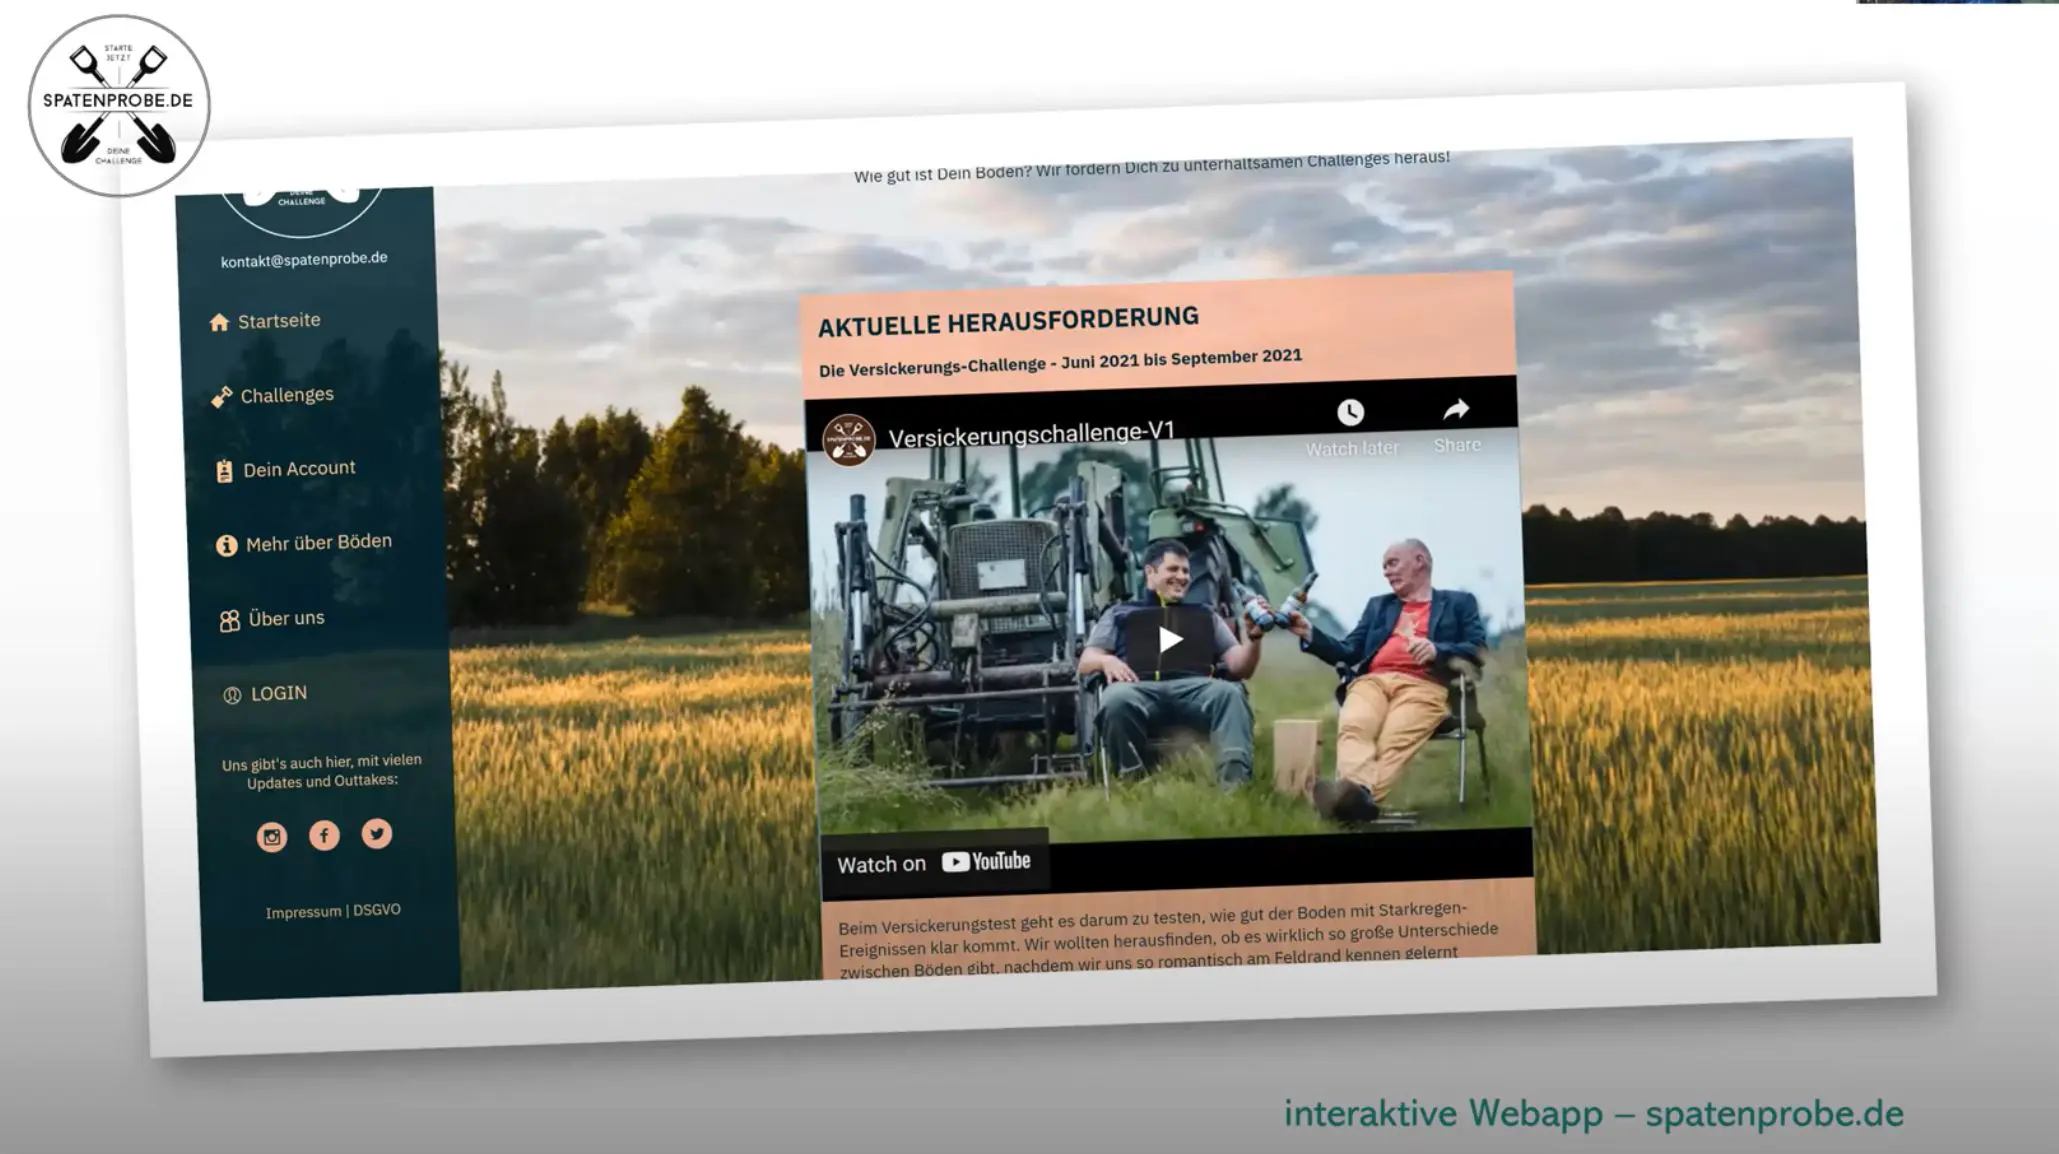 Das Bild zeigt die Startseite der Webseite von dem UpdateDeutschland-Projekt "Spatenprobe".